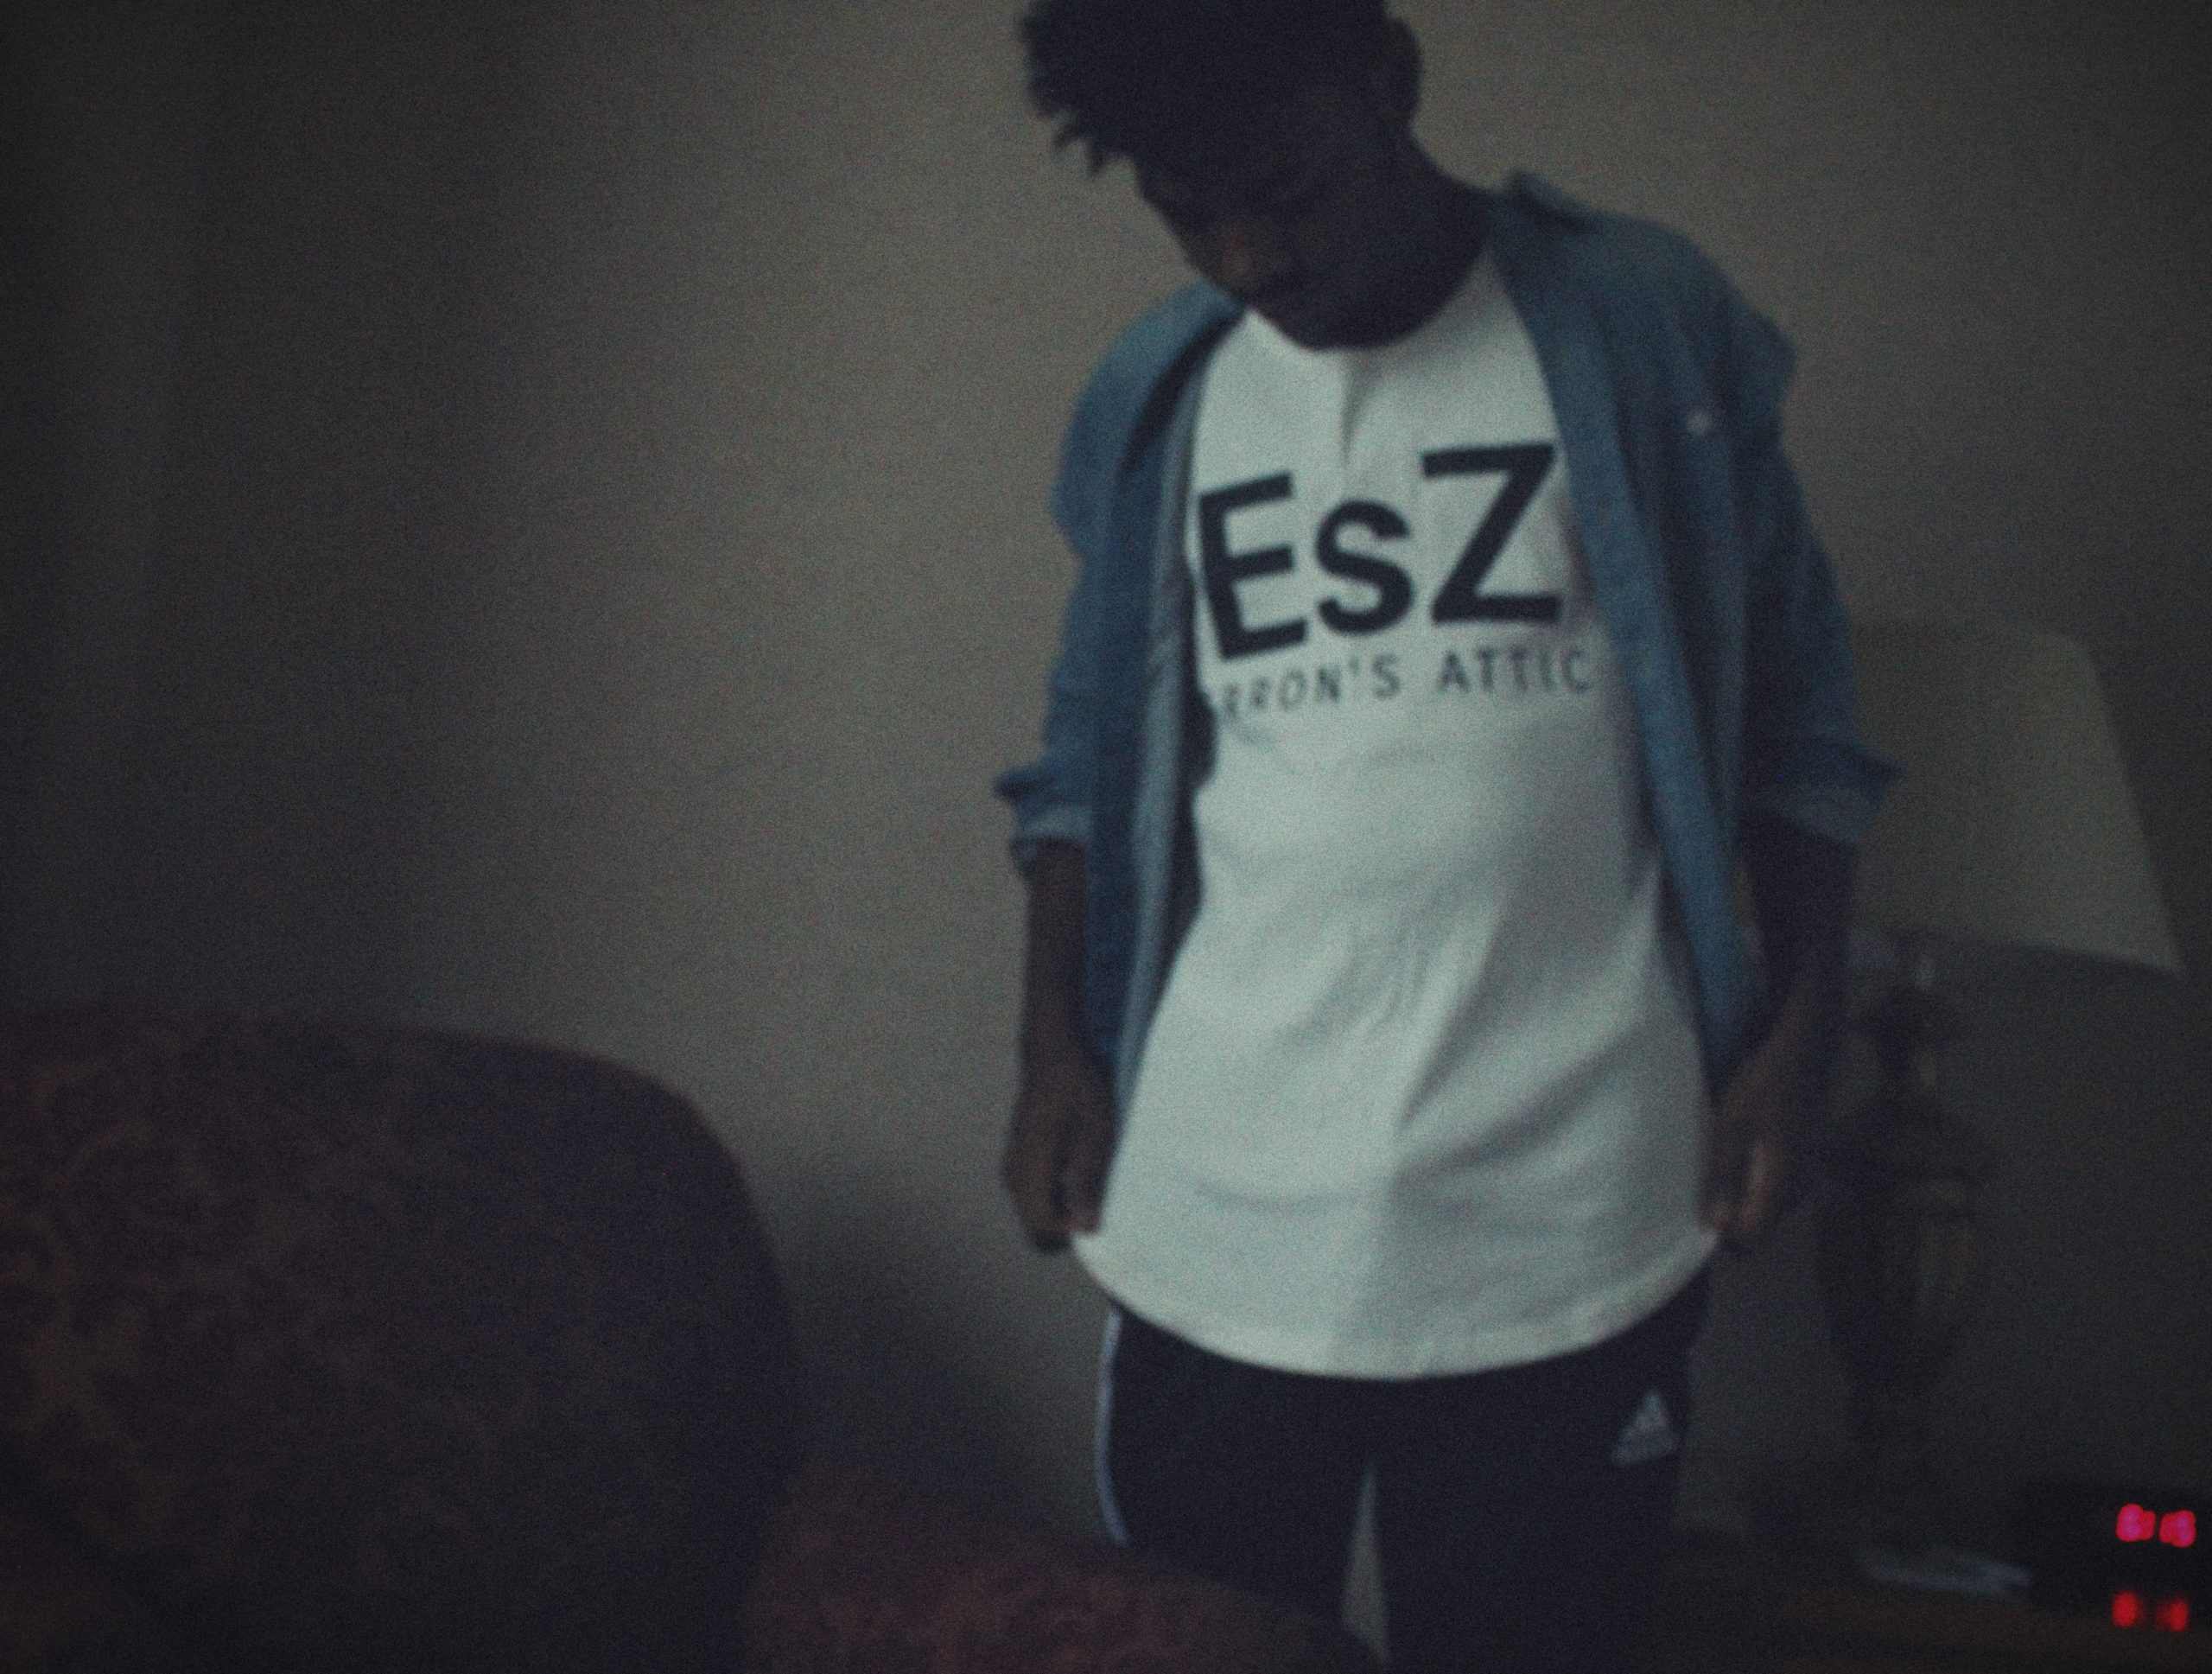 Sponsored Post: EsZ – “Liquor & Emotions”